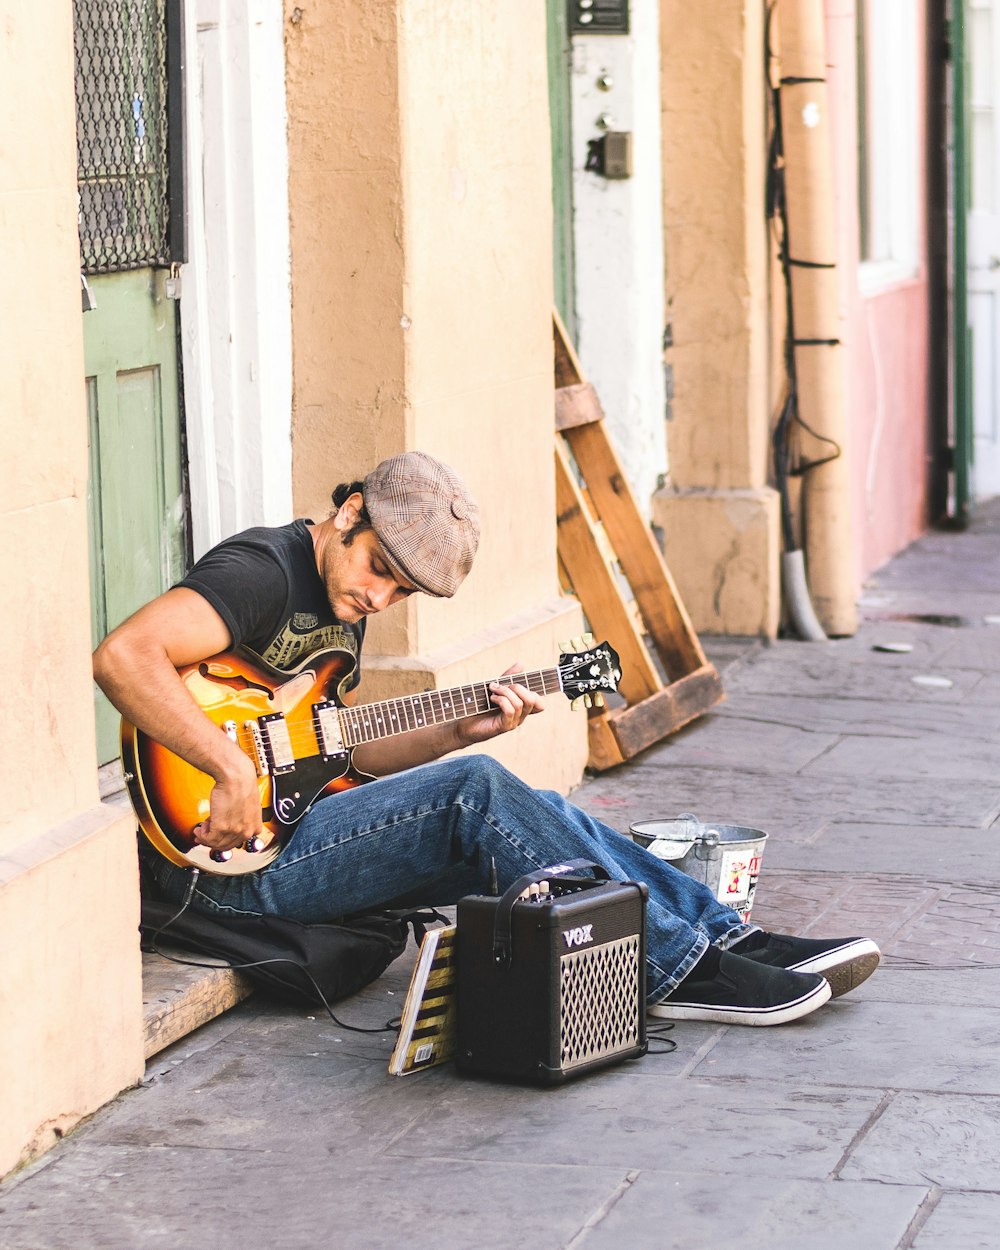 일렉트릭 기타를 연주하는 남자의 사진